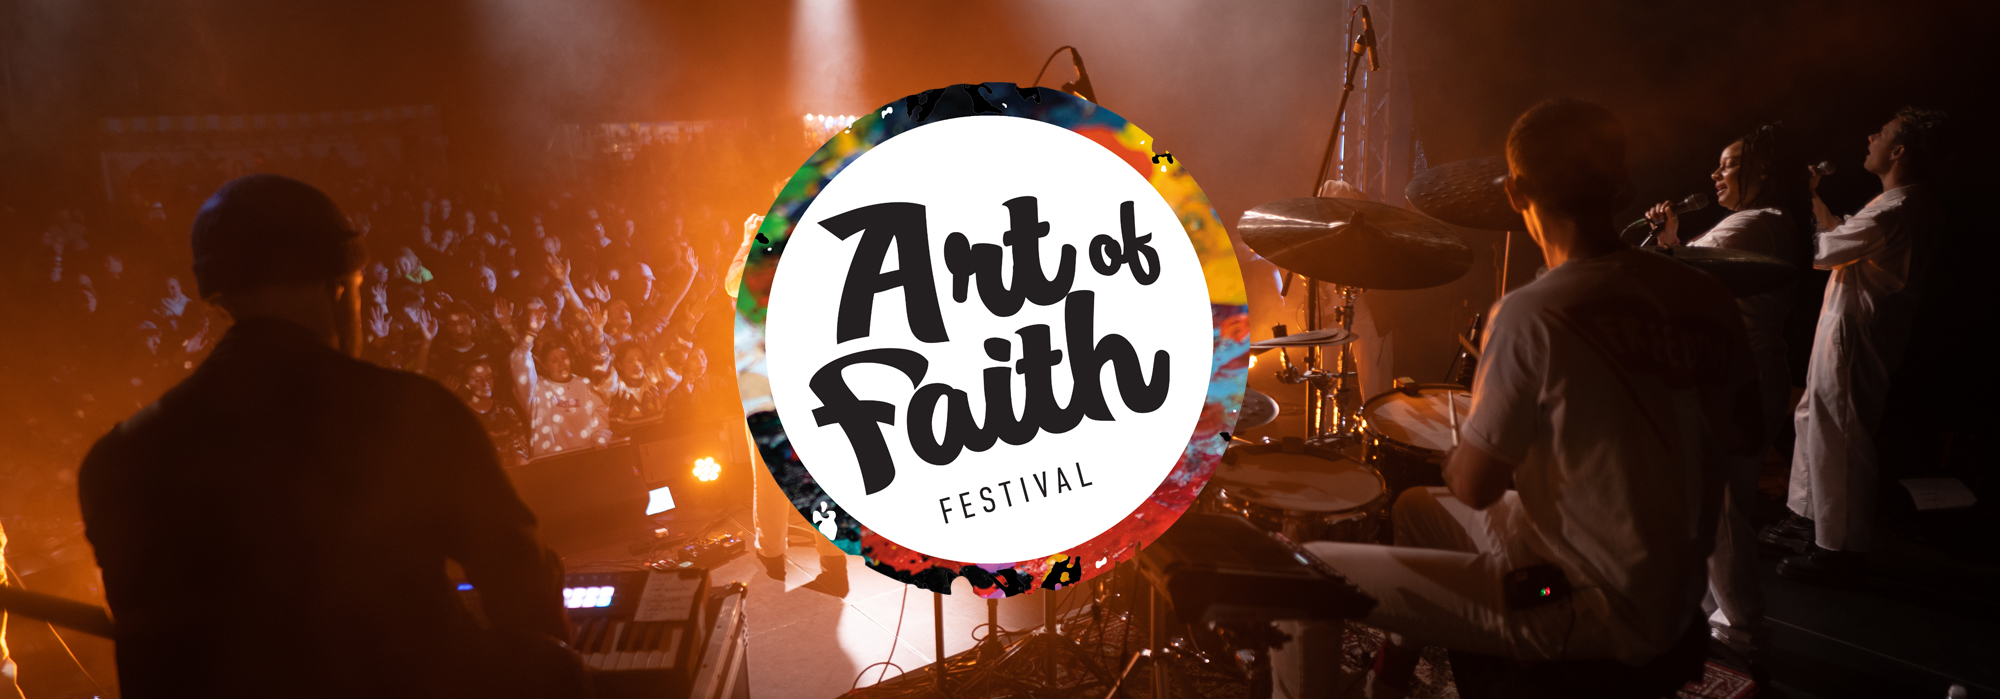 Website Art of Faith Festival